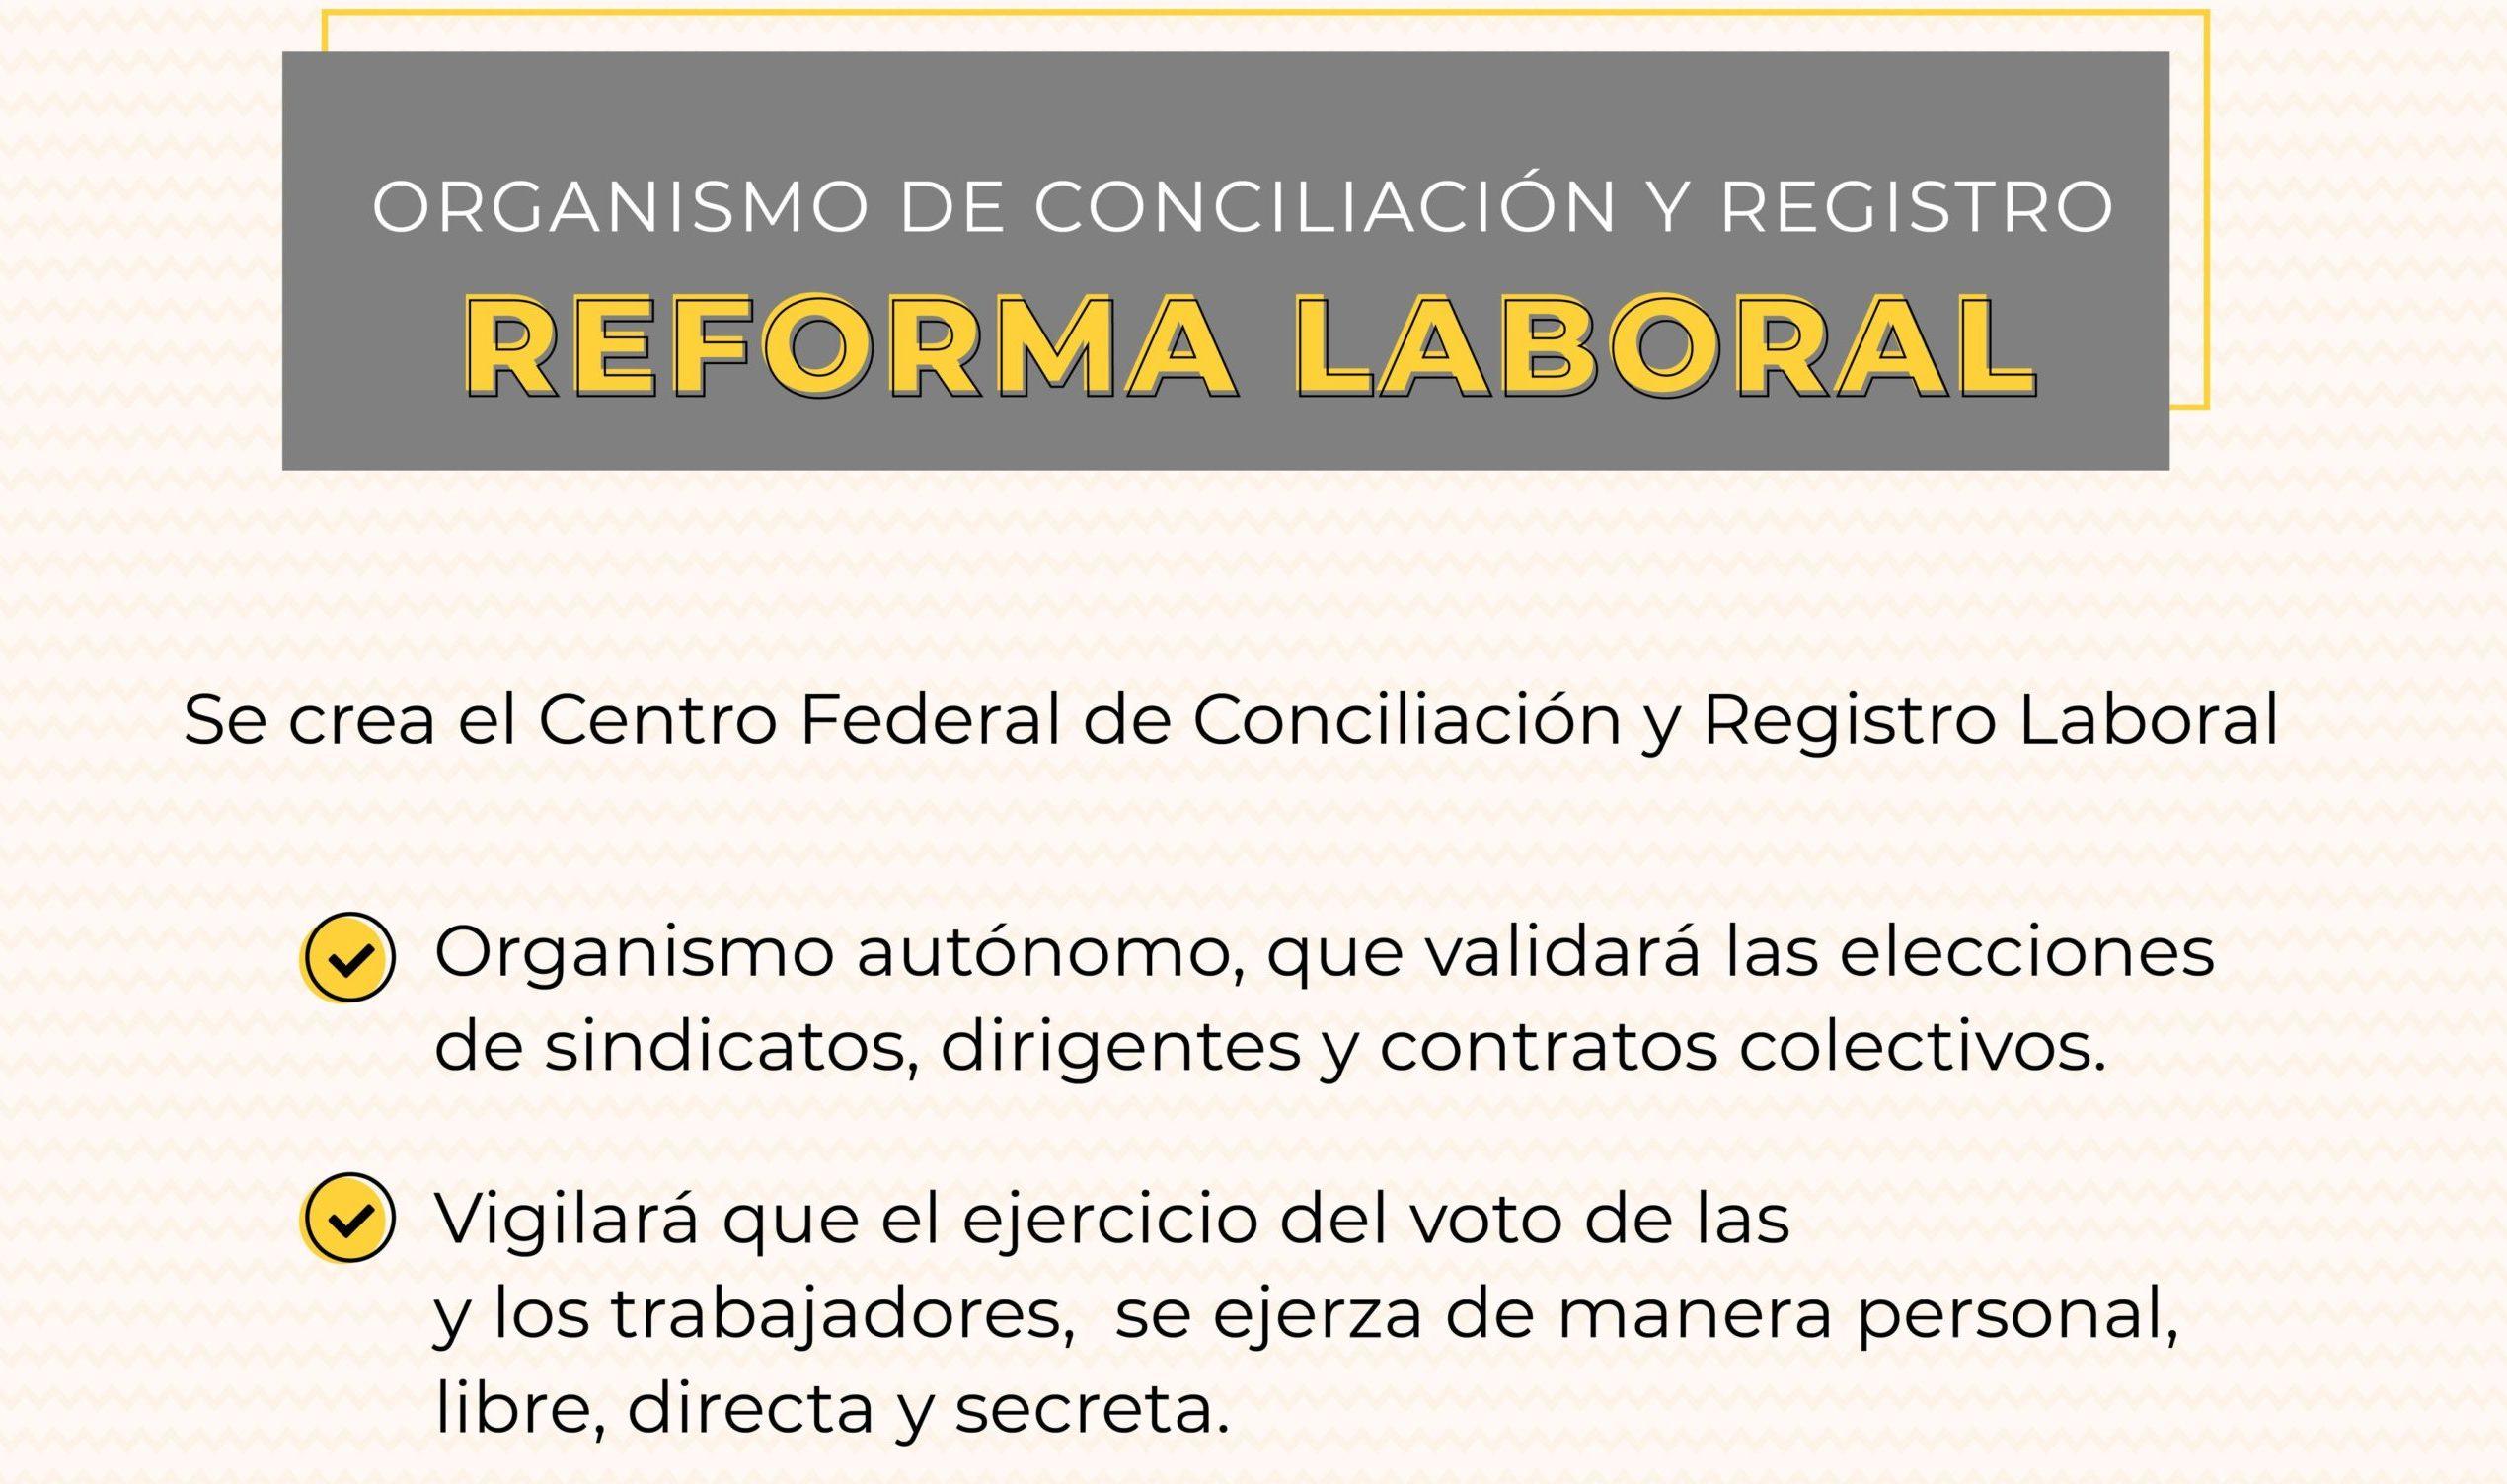 ¡Es oficial! Nace el Centro Federal de Conciliación y Registro Laboral